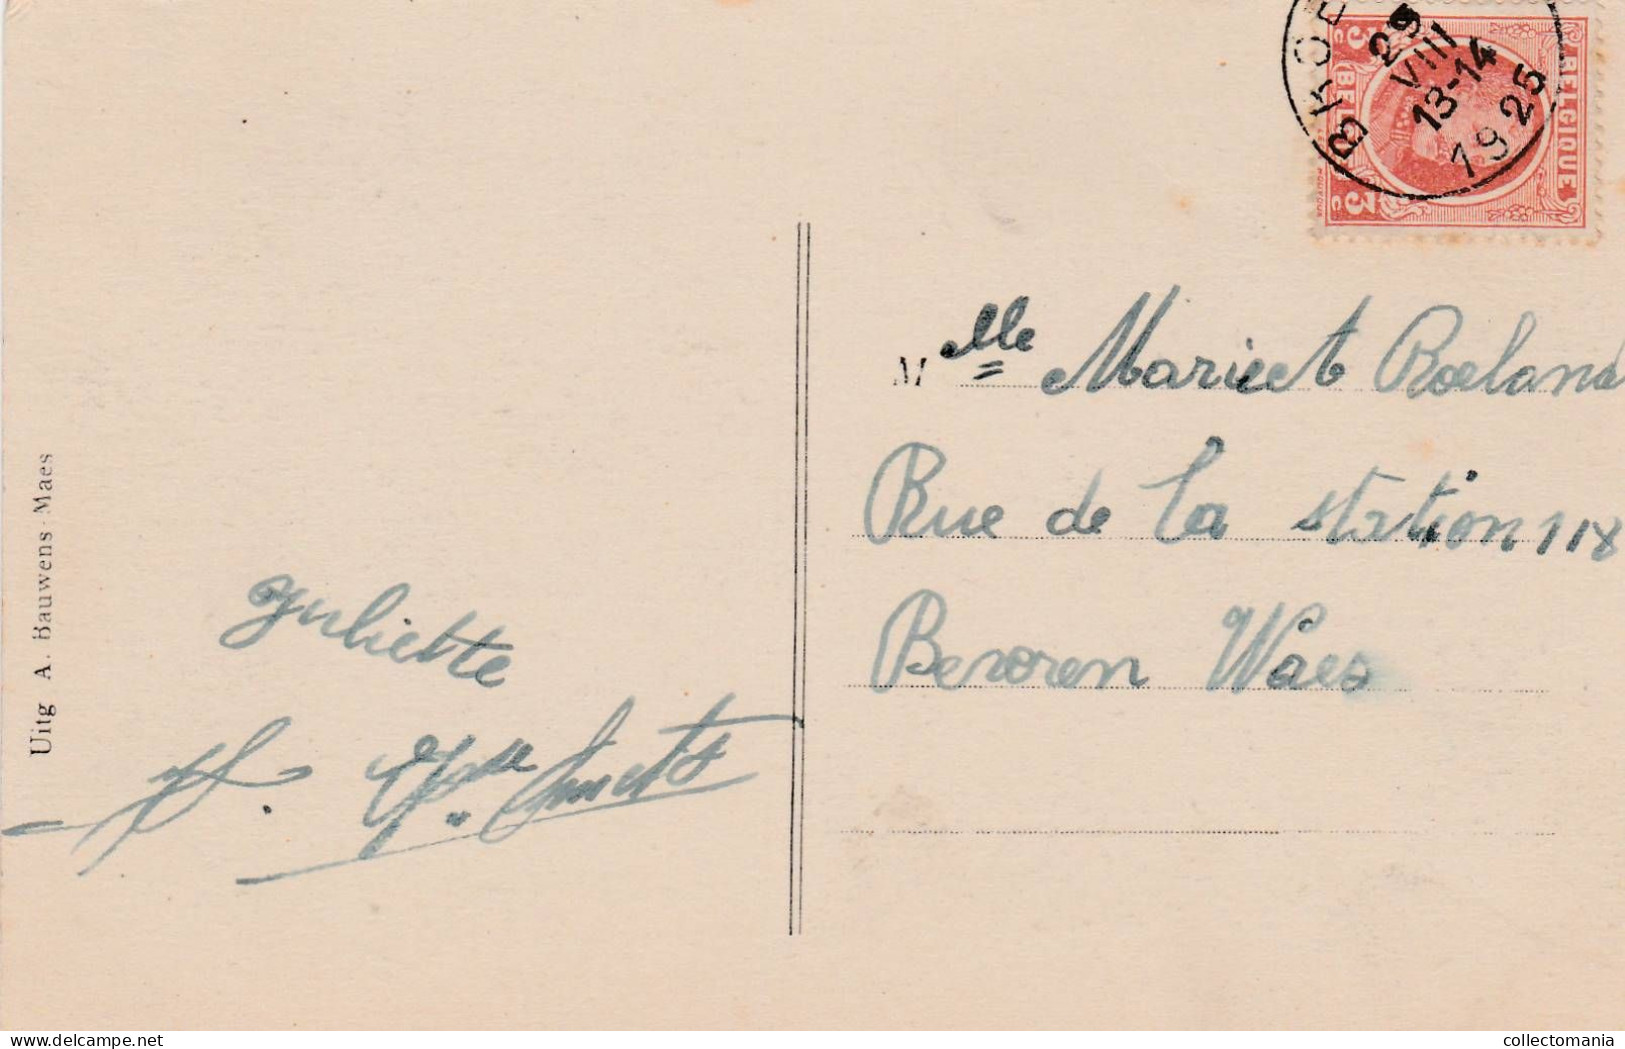 1 Oude Postkaart  Viersel Dijk  1925 - Zandhoven